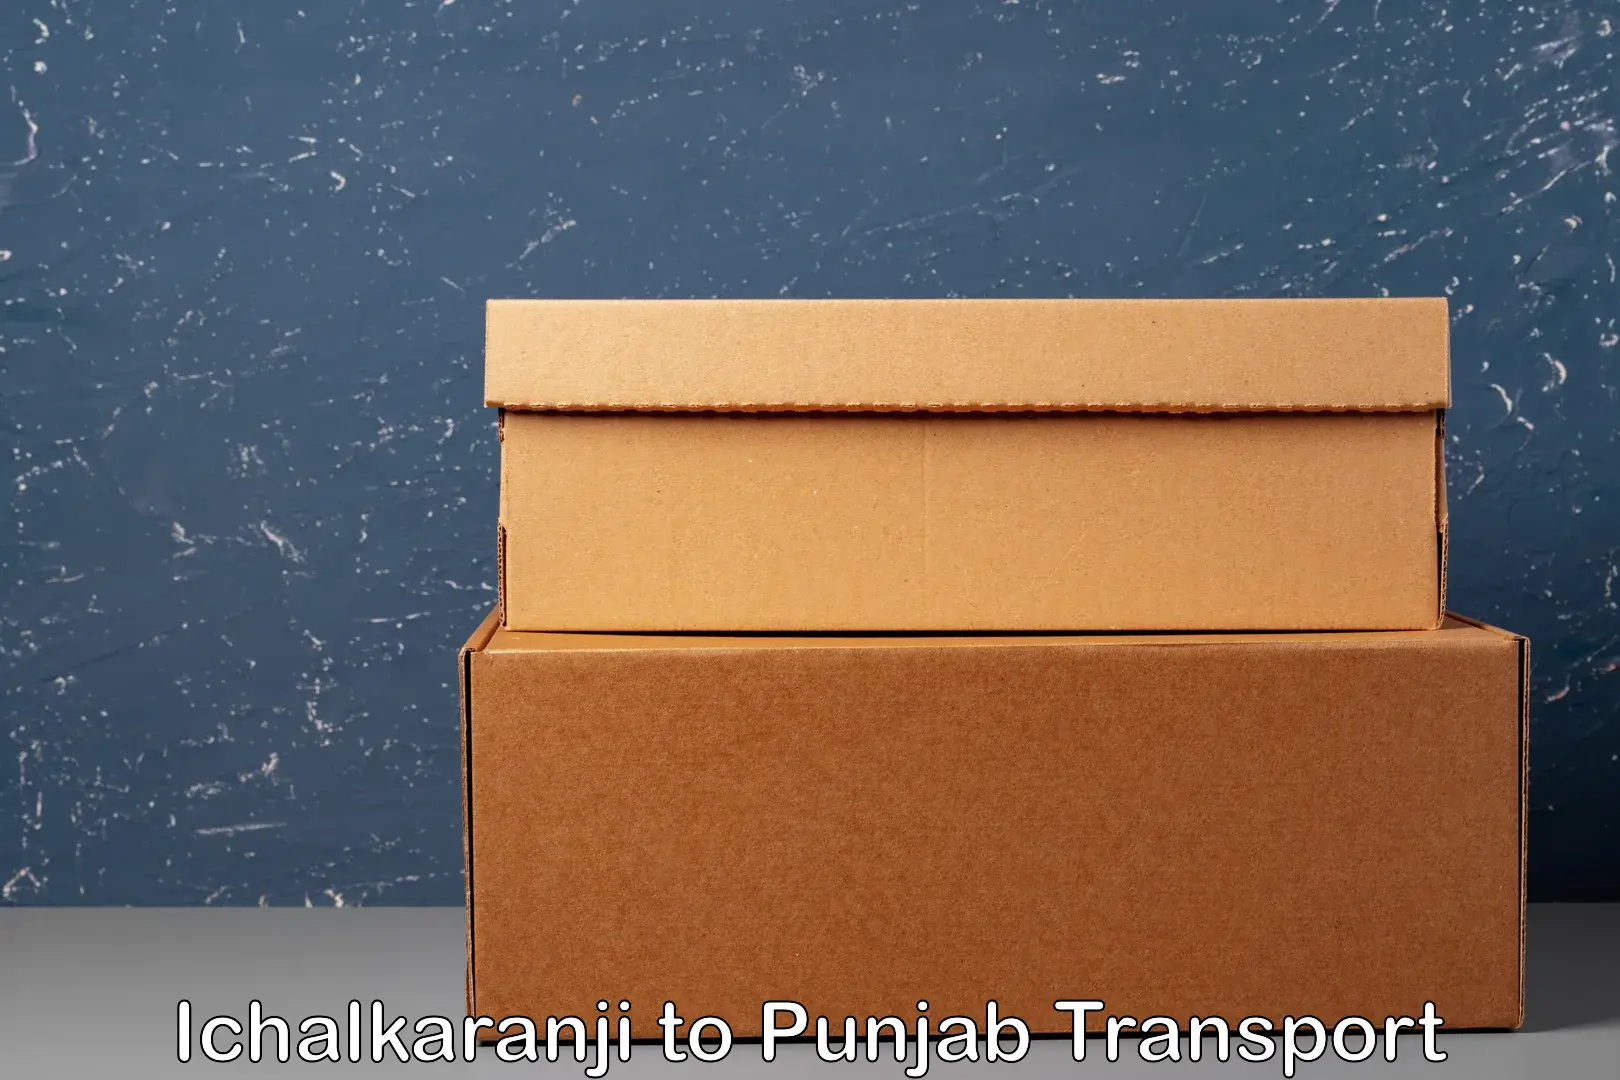 Intercity transport Ichalkaranji to Punjab